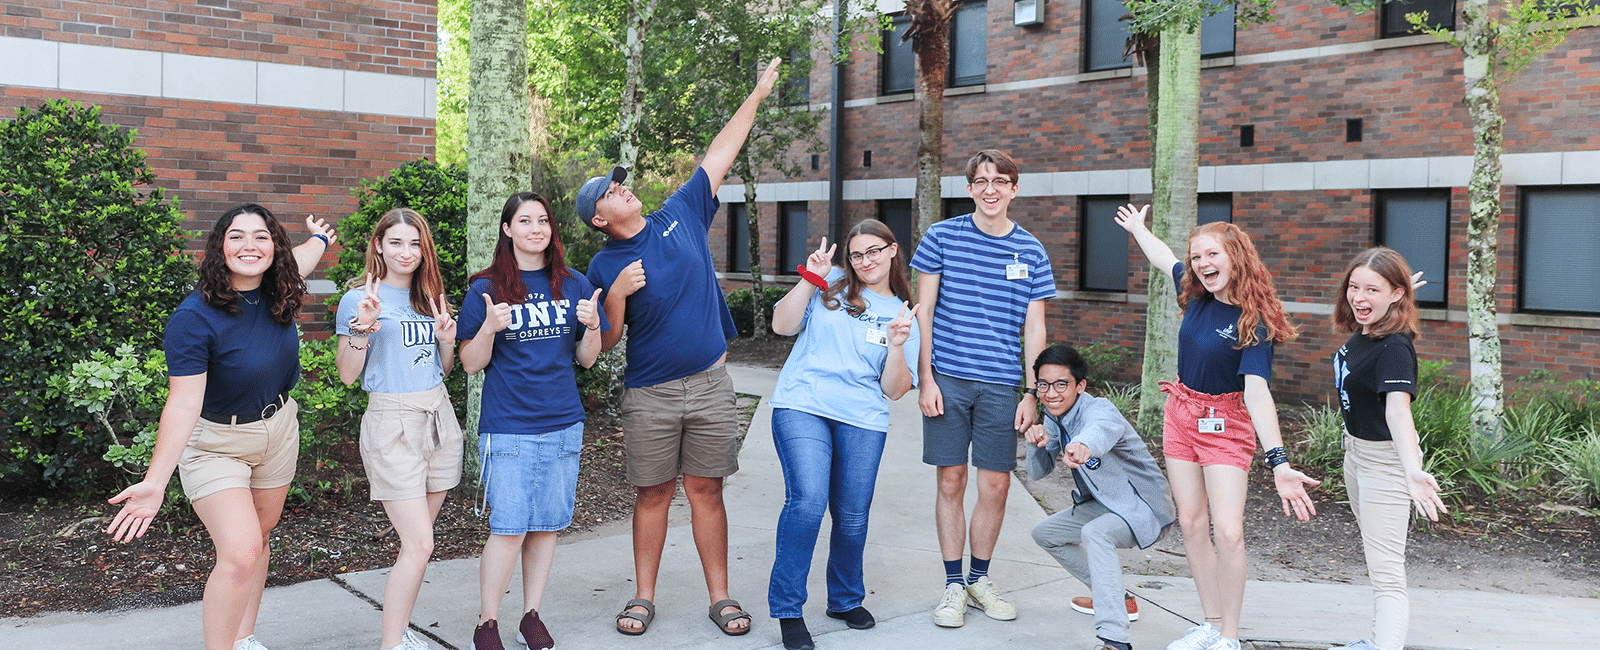 Osprey Crossings 2021-2022 Student Staff members smiling making fun poses